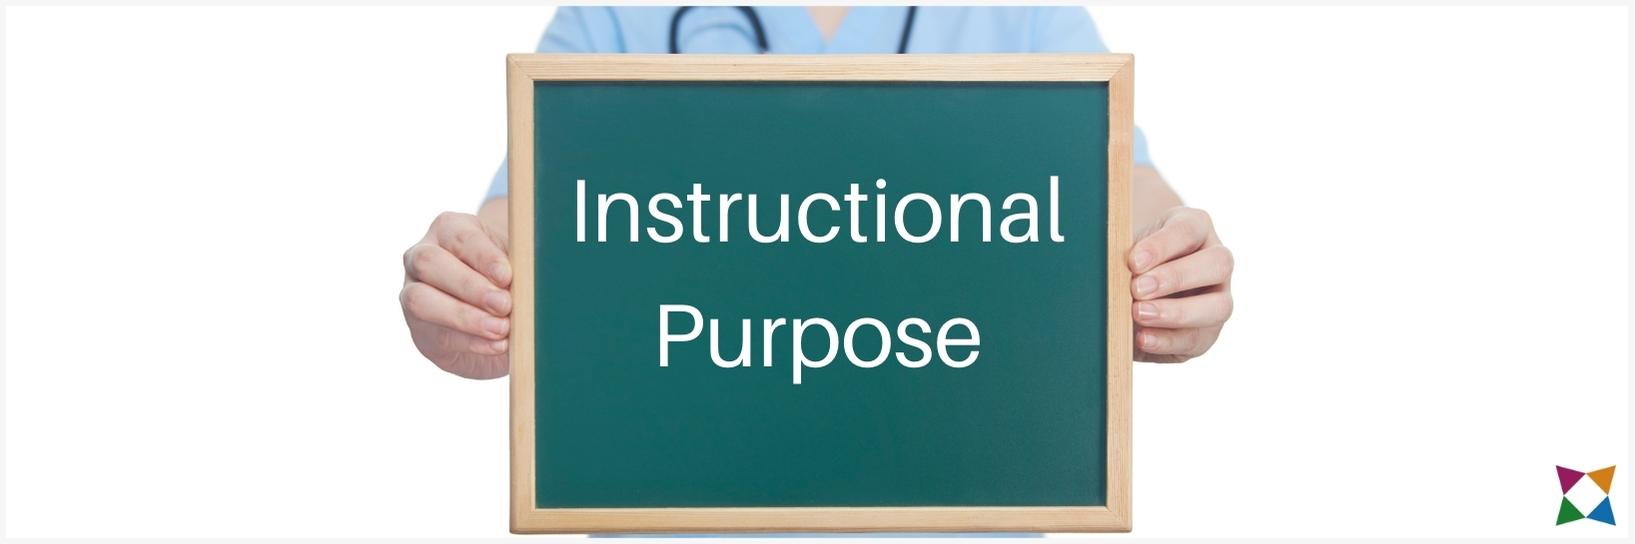 nha-aes-instructional-purpose-anatomy